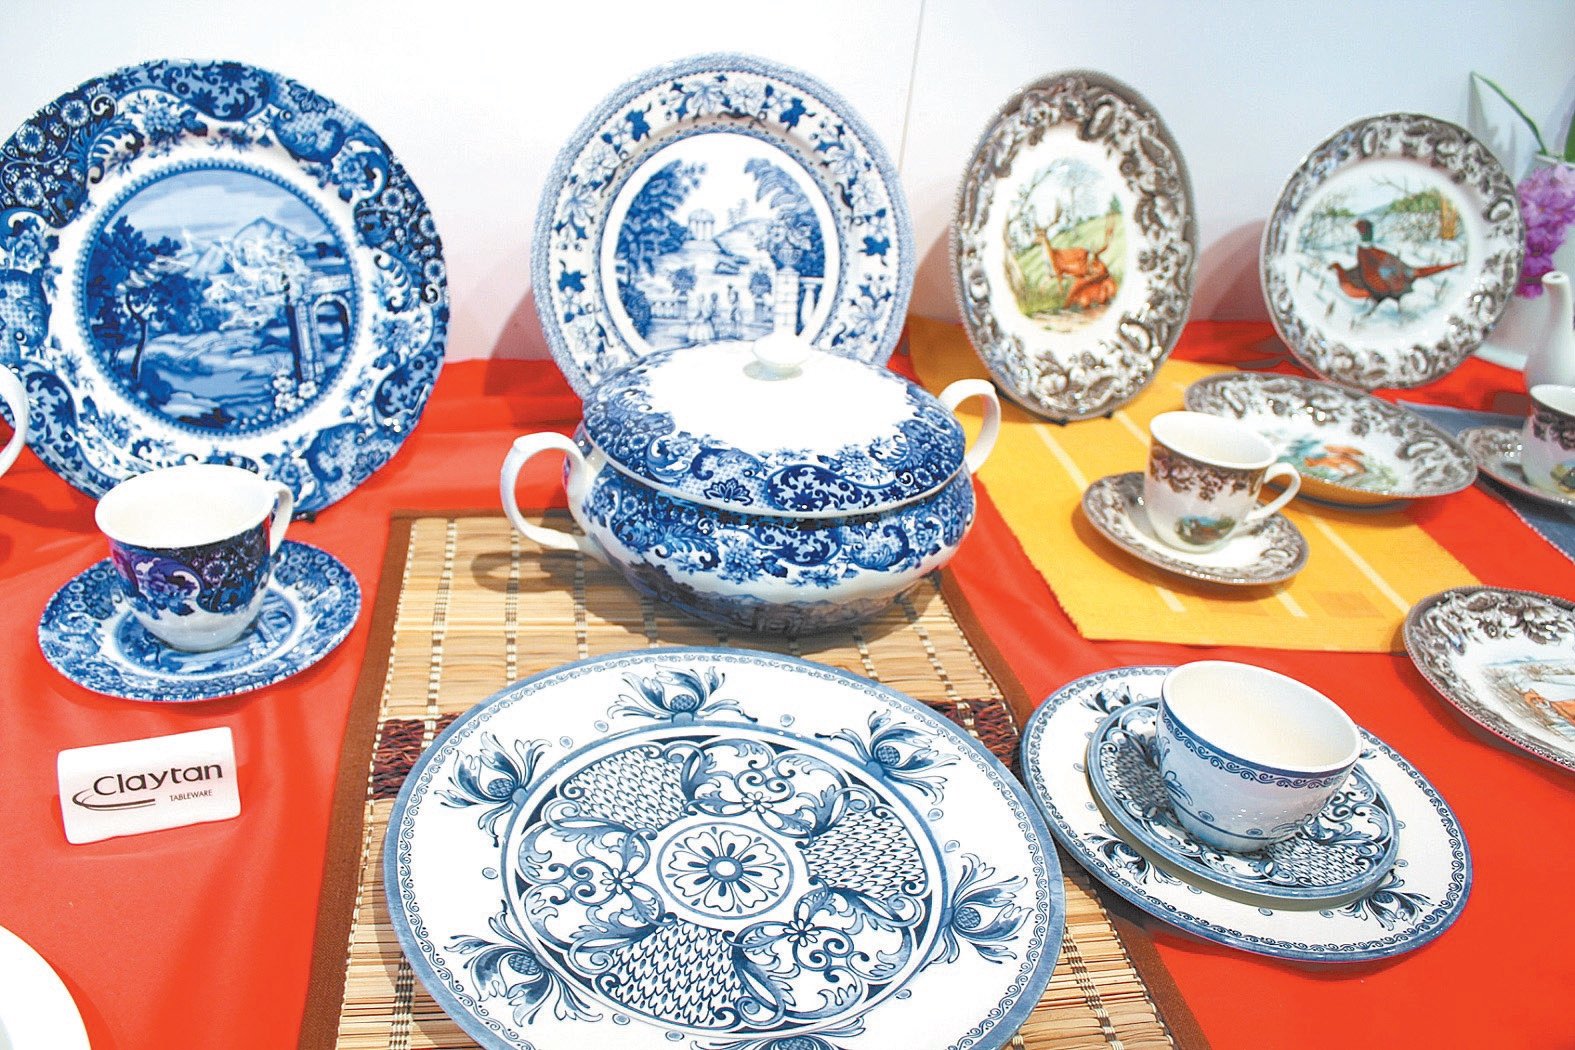 佳丽登集团所生产的陶瓷餐具采用陶瓷釉下彩工艺，无铅无毒，达到产品安全指标，让消费能放心使用。